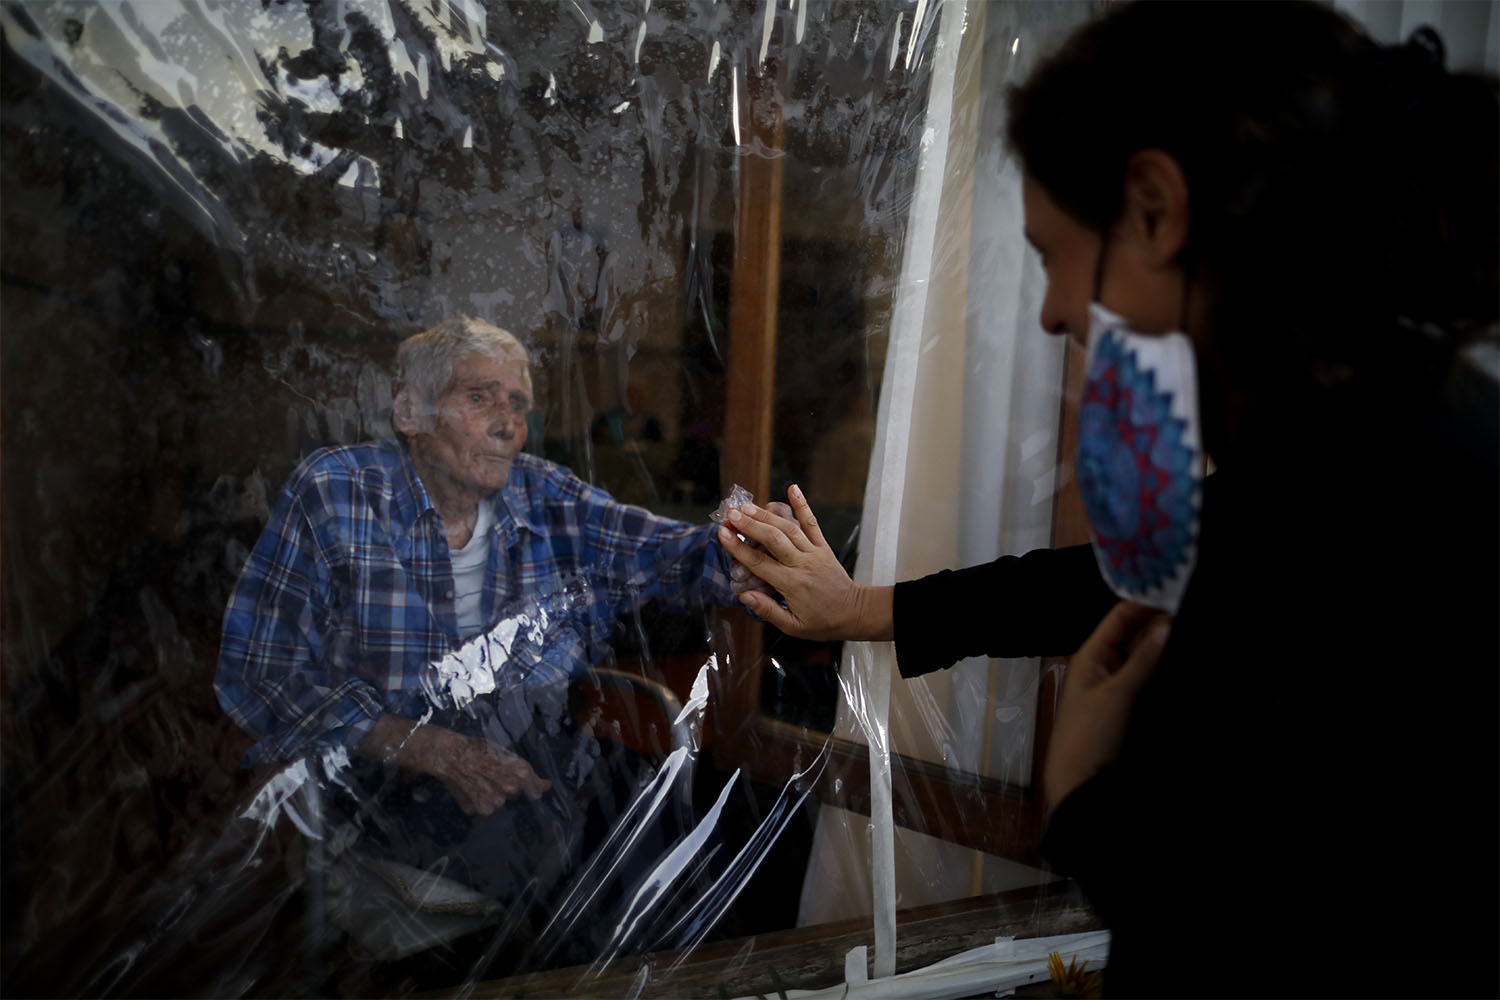 מעון לקשישים בארגנטינה. ויקטור טריפיאנה בן ה-86 מושיט יד לגעת בידי כלתו, סילביה פרננדס סוטו, כשהוא מבודד על ידי יריעת פלסטיק עקב הקורונה. 4 באפריל 2021 (צילום: AP Photo/Natacha Pisarenko)